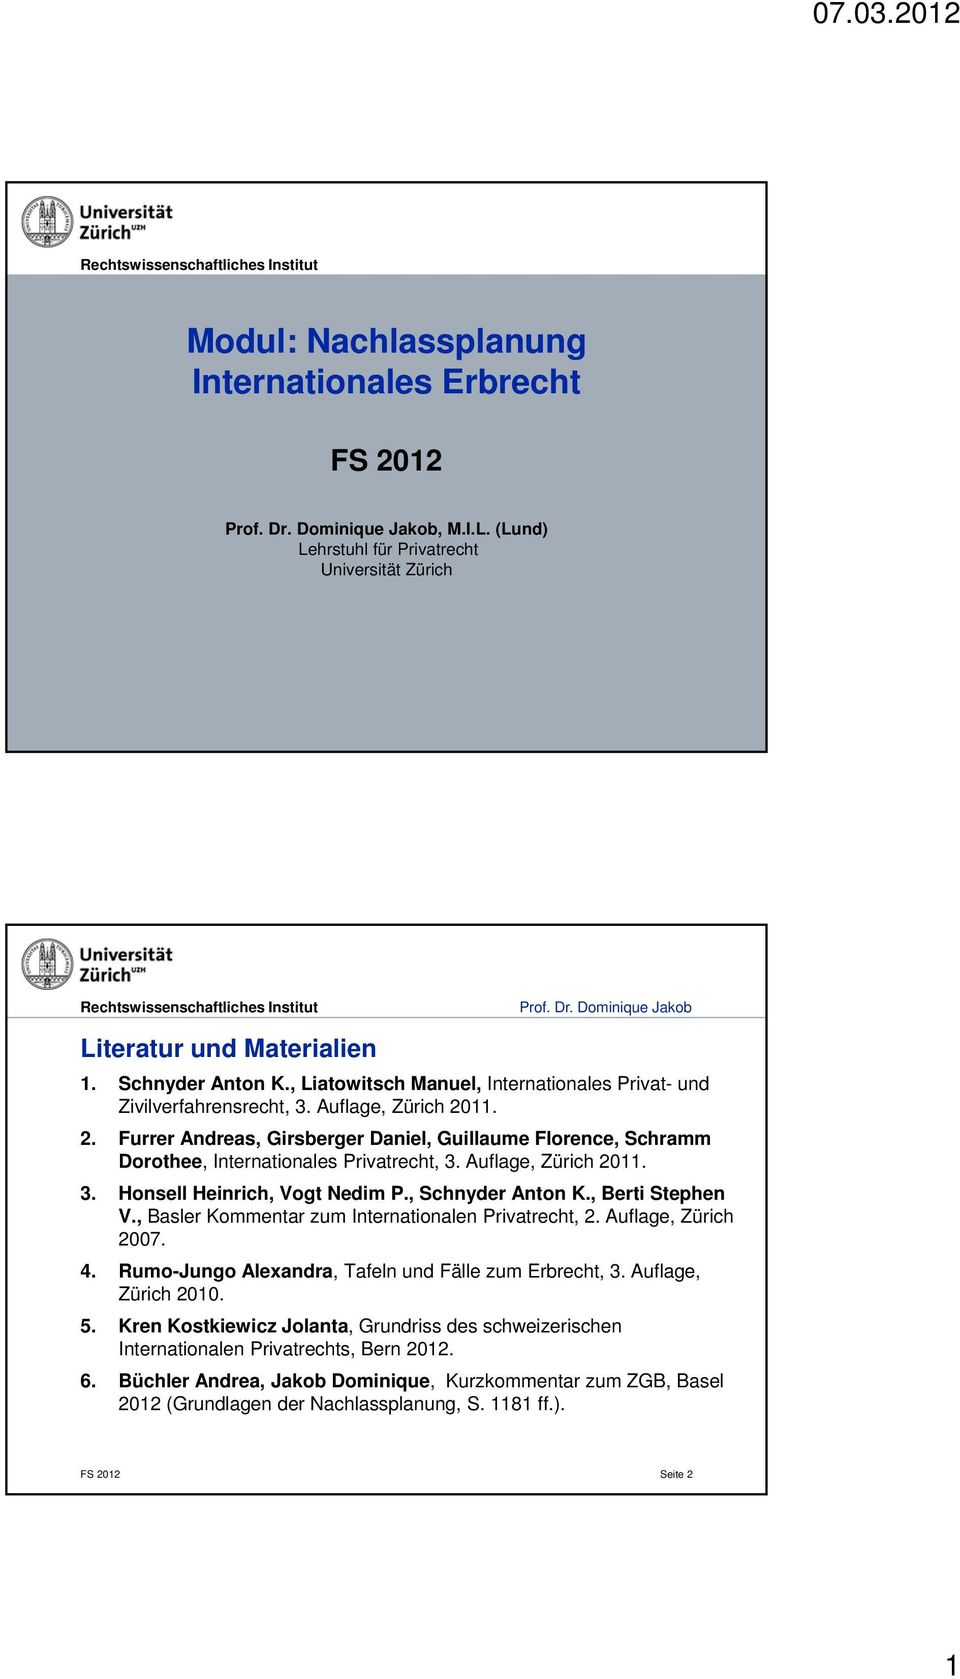 Auflage, Zürich 2011. 3. Honsell Heinrich, Vogt Nedim P., Schnyder Anton K., Berti Stephen V., Basler Kommentar zum Internationalen Privatrecht, 2. Auflage, Zürich 2007. 4.